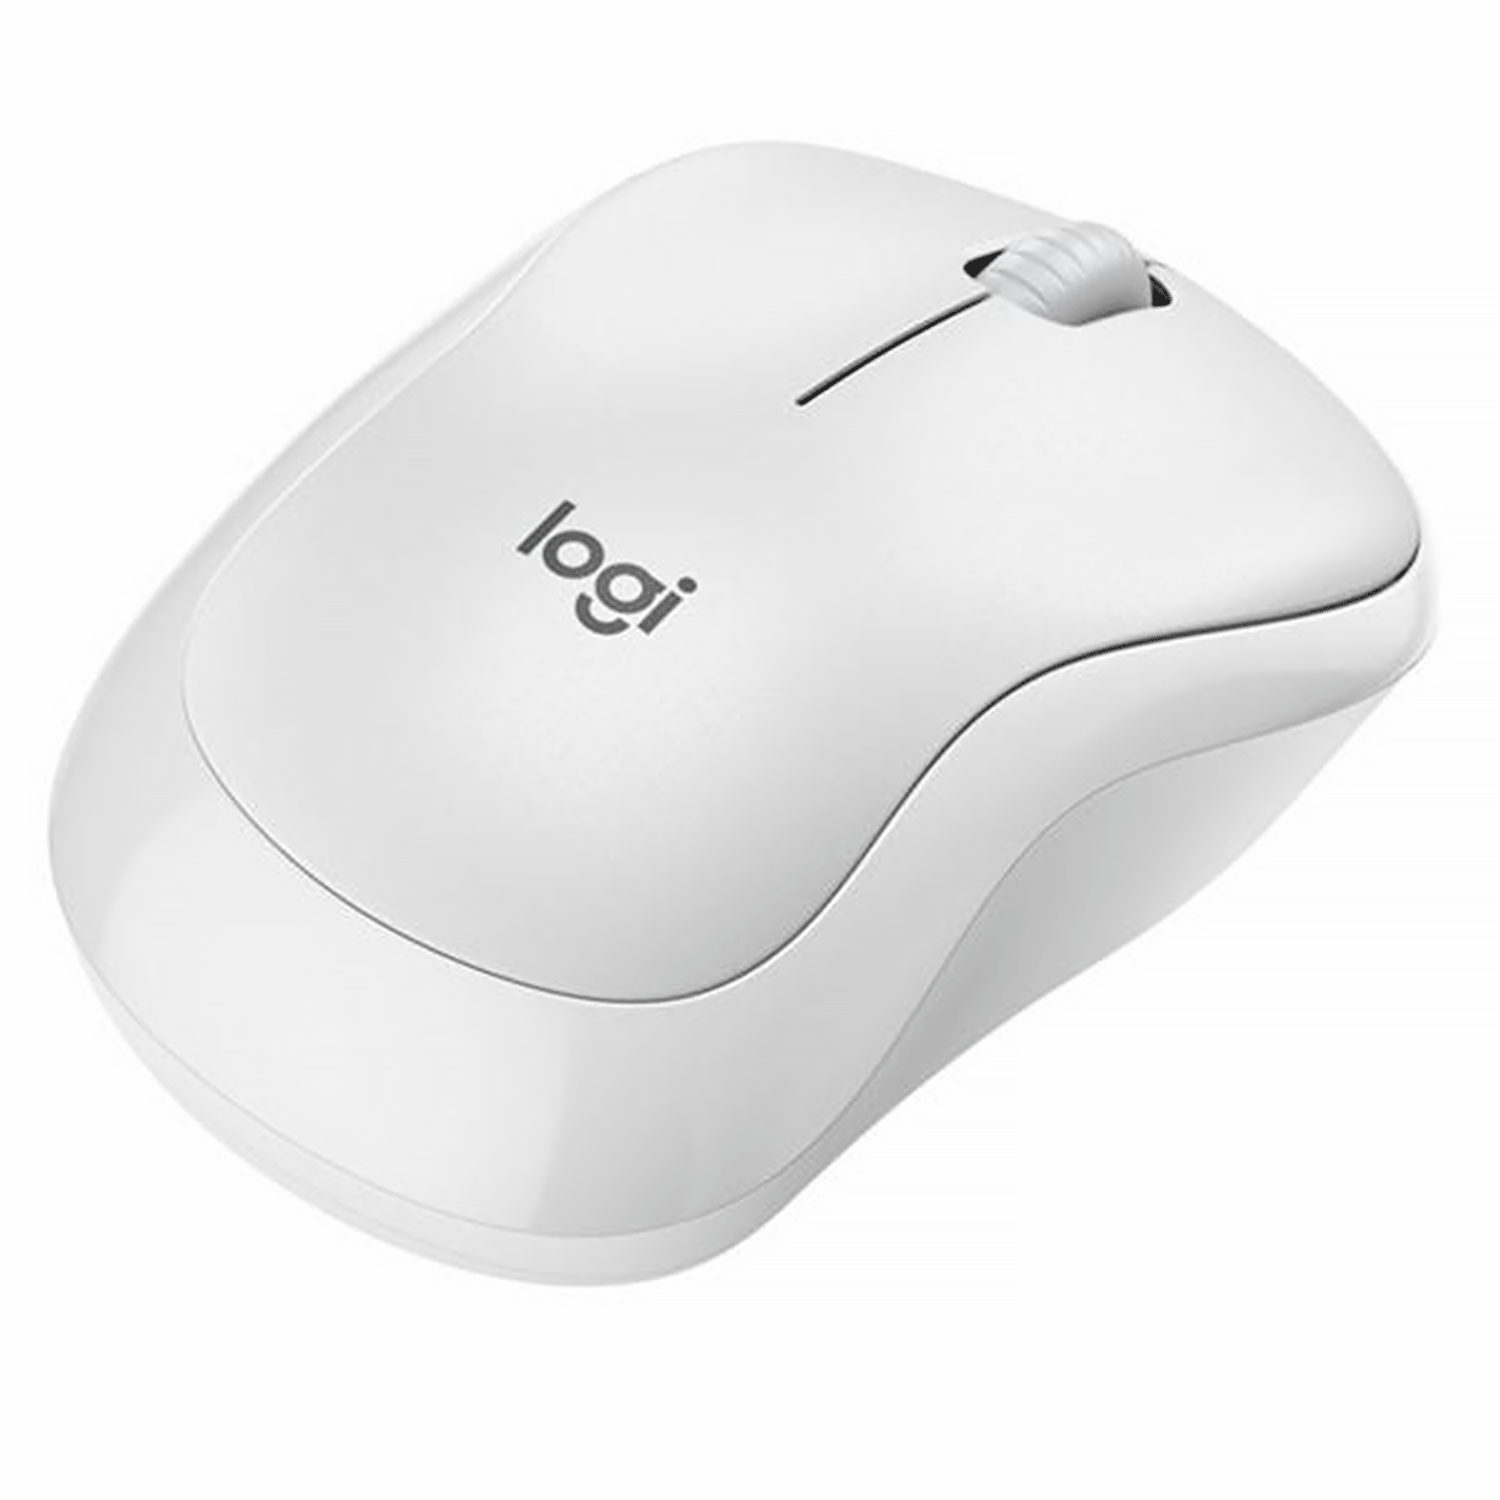 Mouse Logitech M220 Silent - Branco (910-006125)